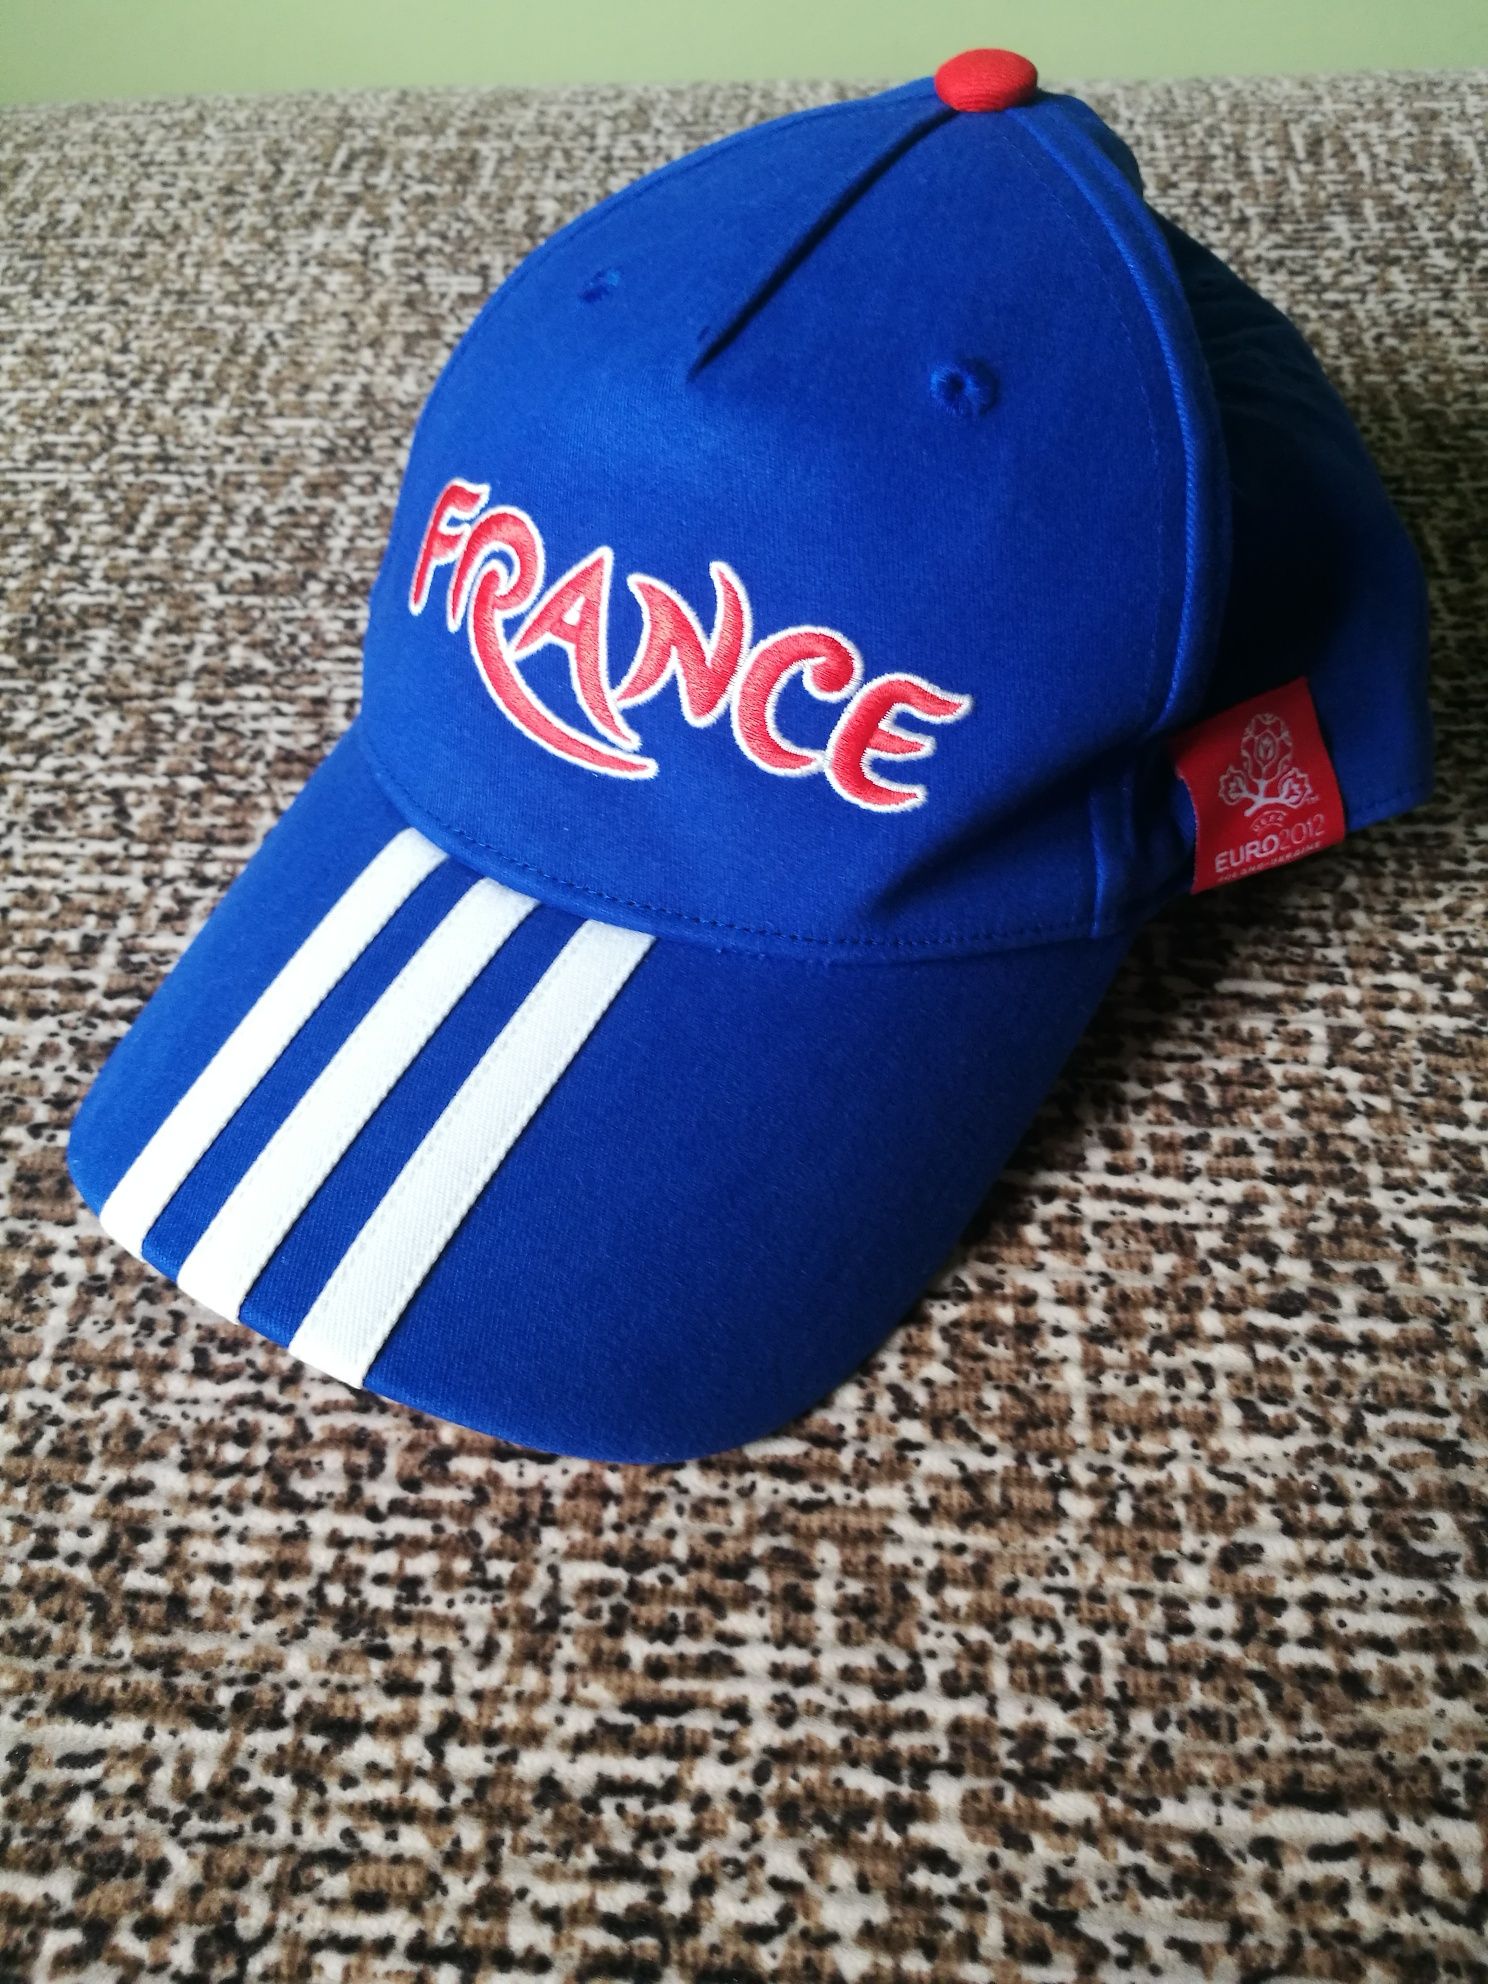 Adidas czapka z daszkiem Euro 2012